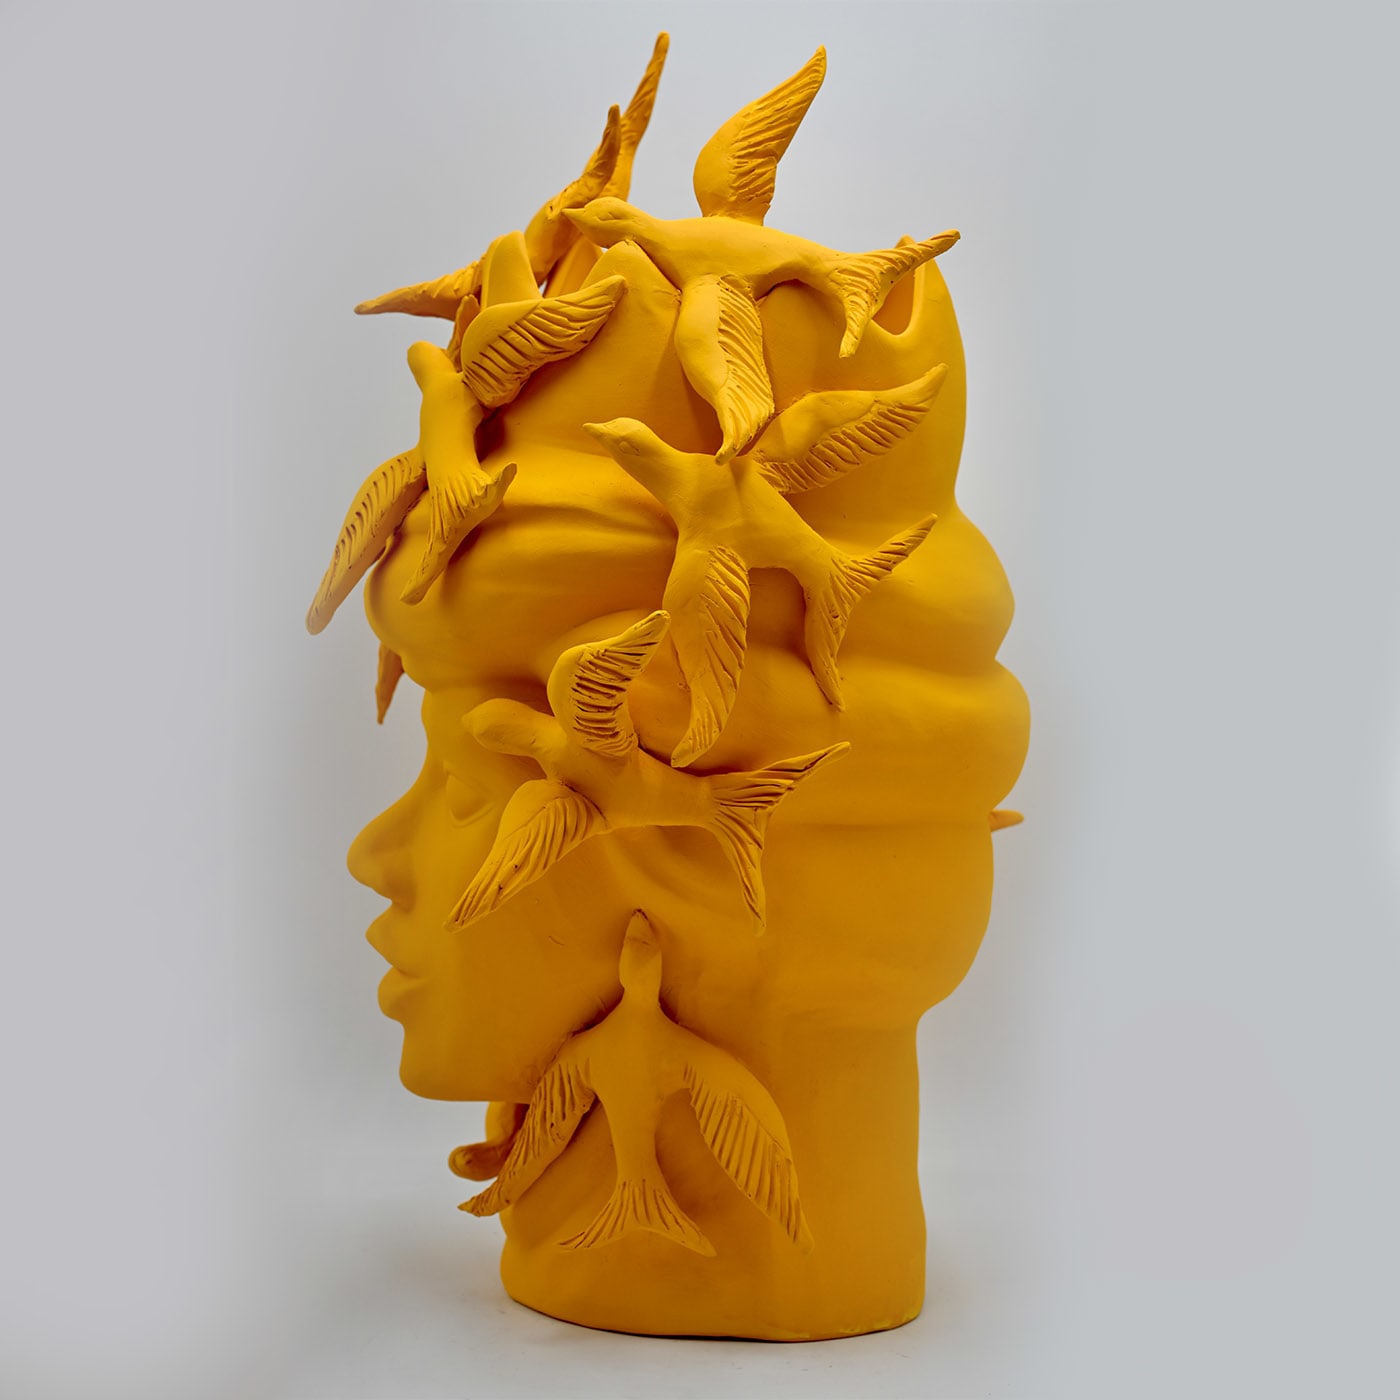 Moor's Head Orange Sculpture